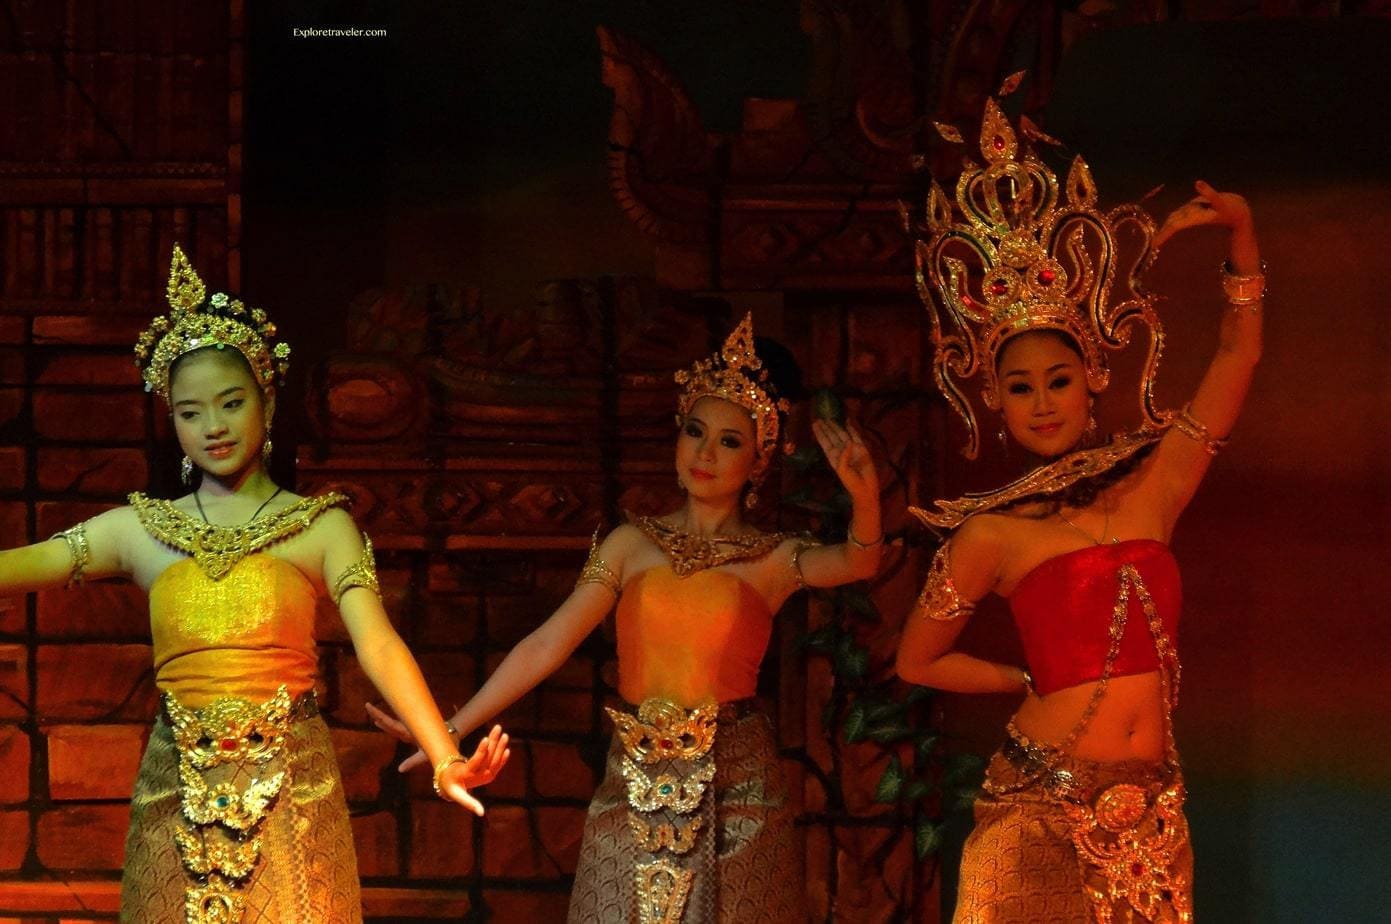 يعود تاريخ الرقص التايلاندي التقليدي إلى العصور السيامية القديمة.